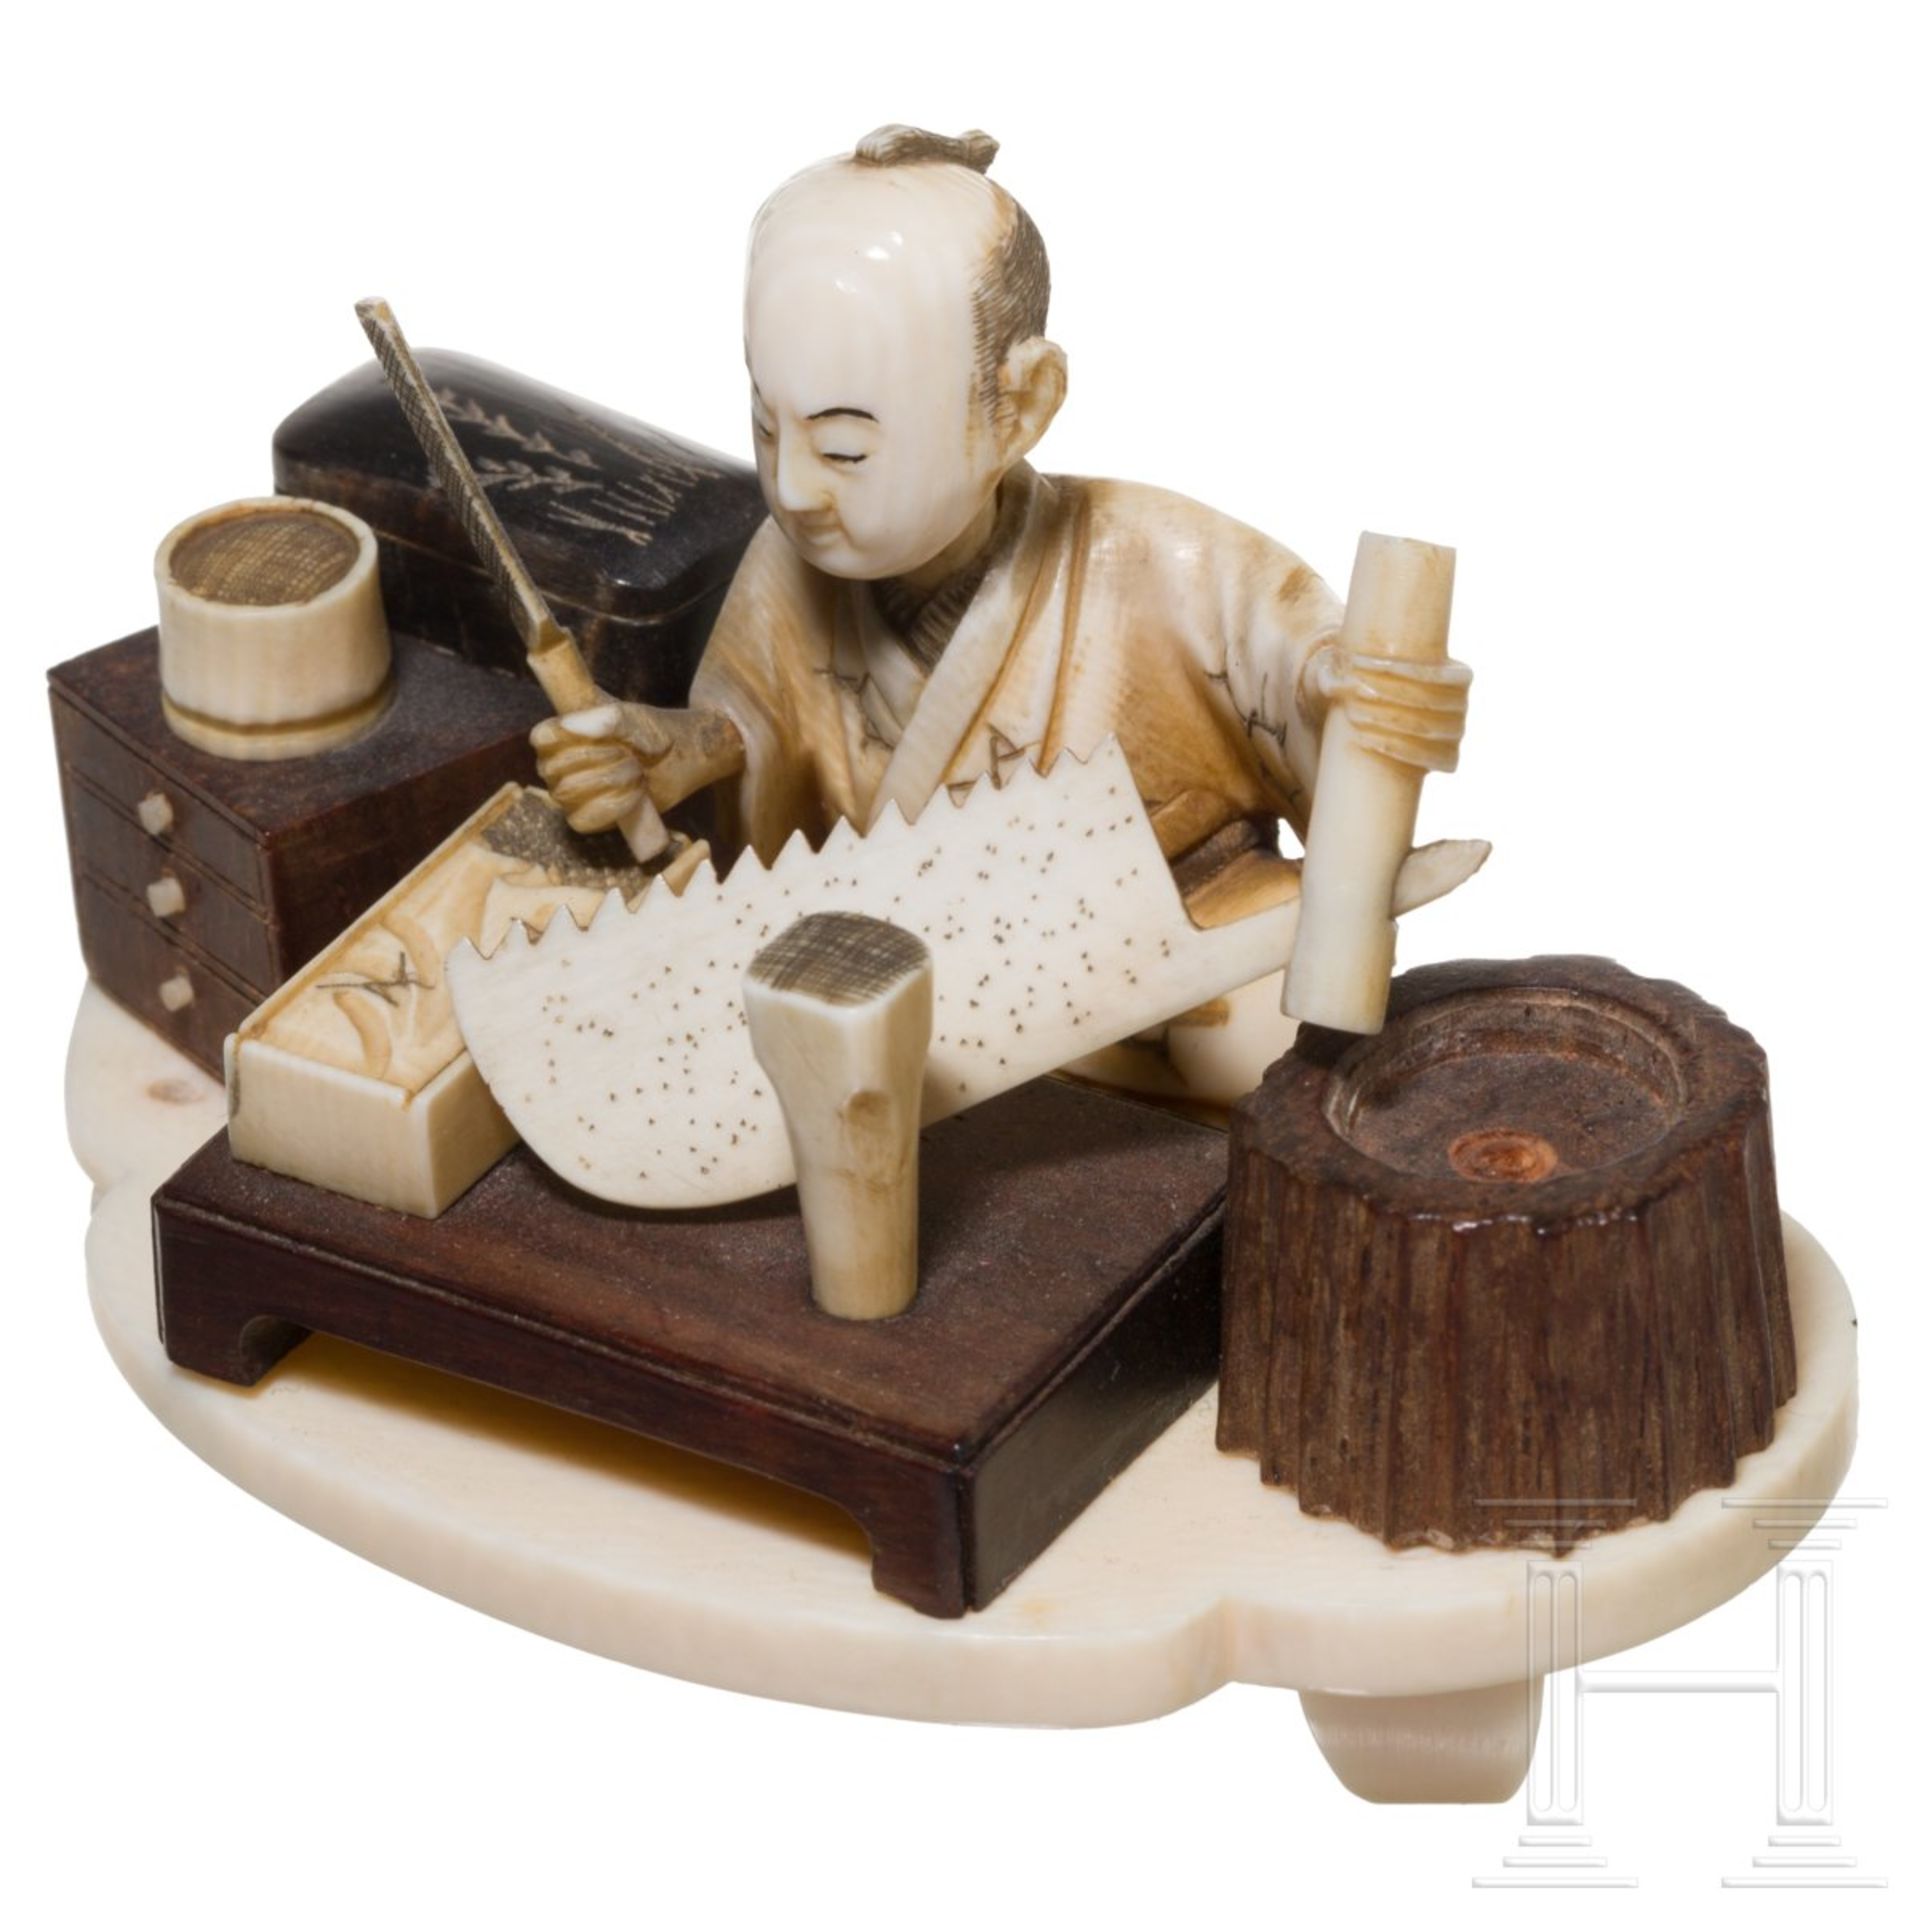 Okimono eines Handwerkers, Japan, Meiji-Period - Bild 2 aus 4